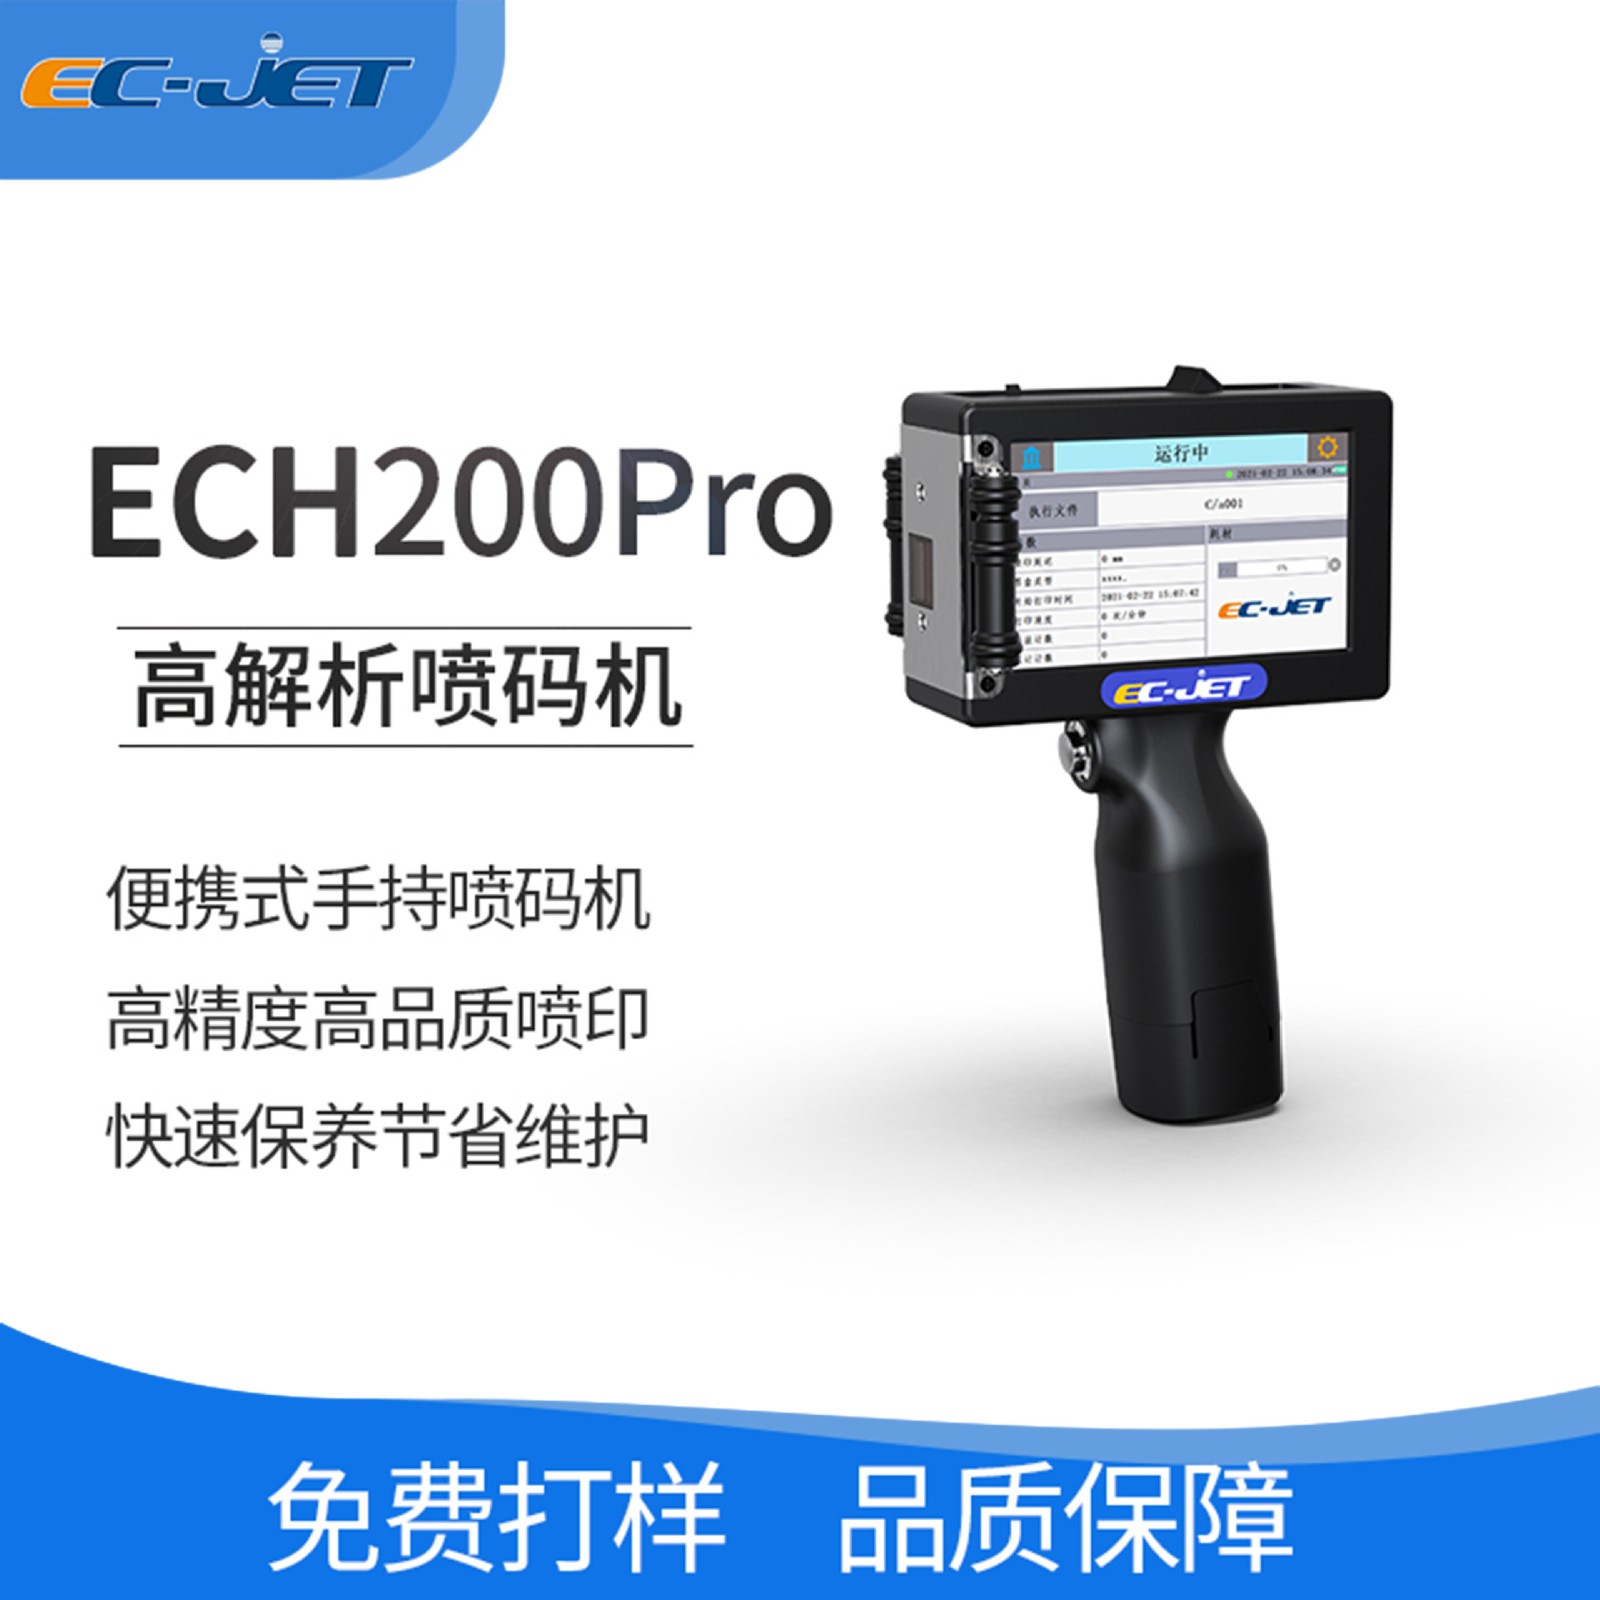 ECH200Pro手持喷码机厂家